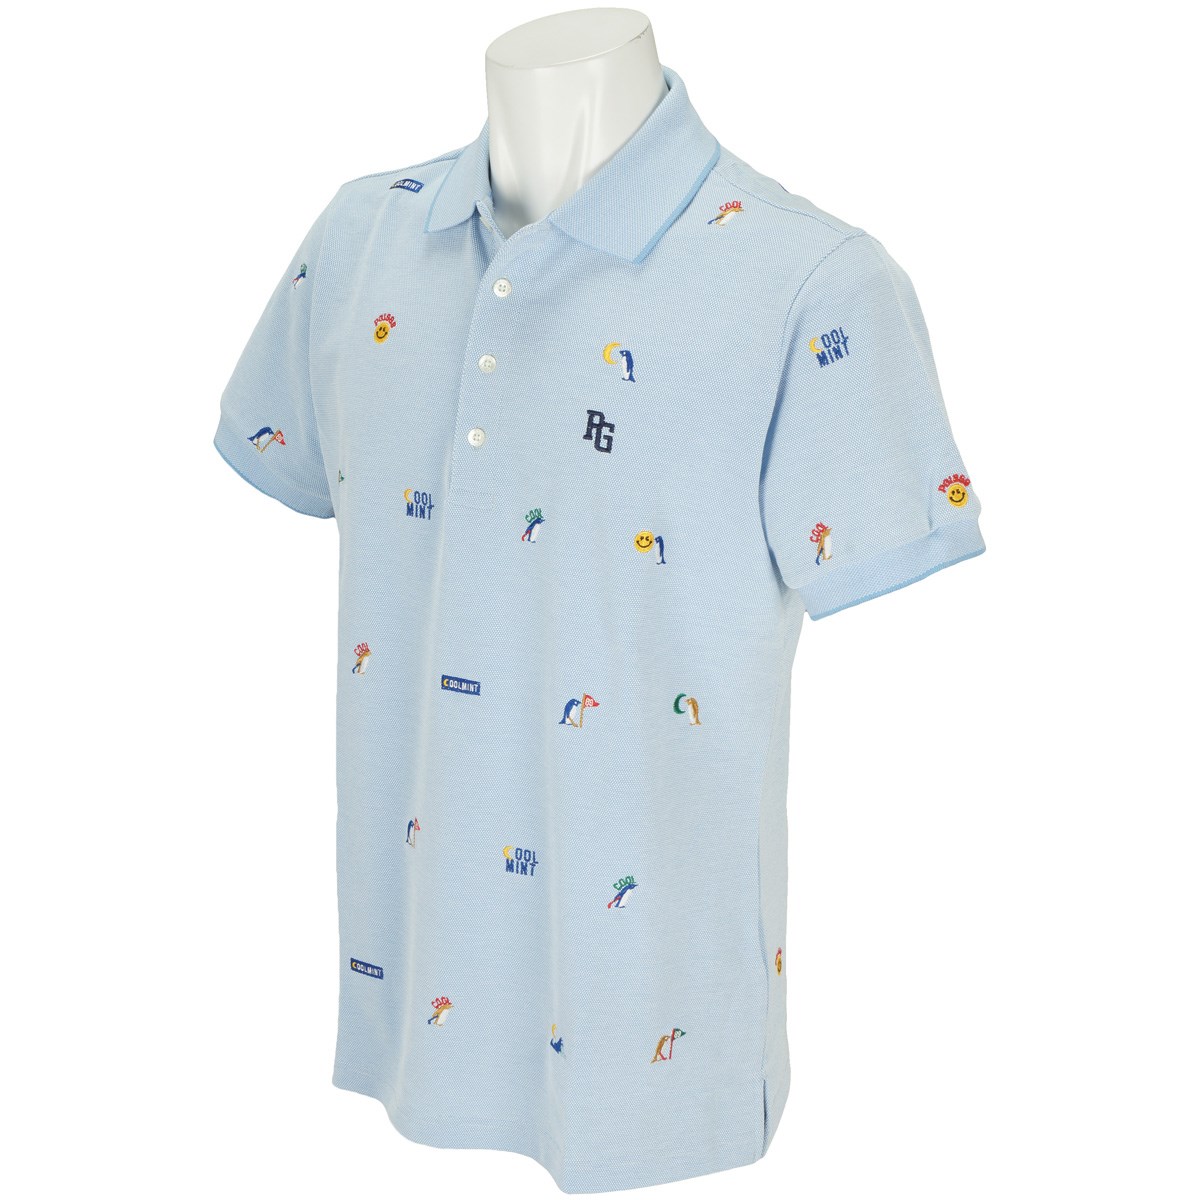 「パーリーゲイツ DRY×鹿の子 COOLMINTエンブ 半袖ポロシャツ 」（ポロシャツ・シャツ）- ゴルフ(GOLF)用品のネット通販